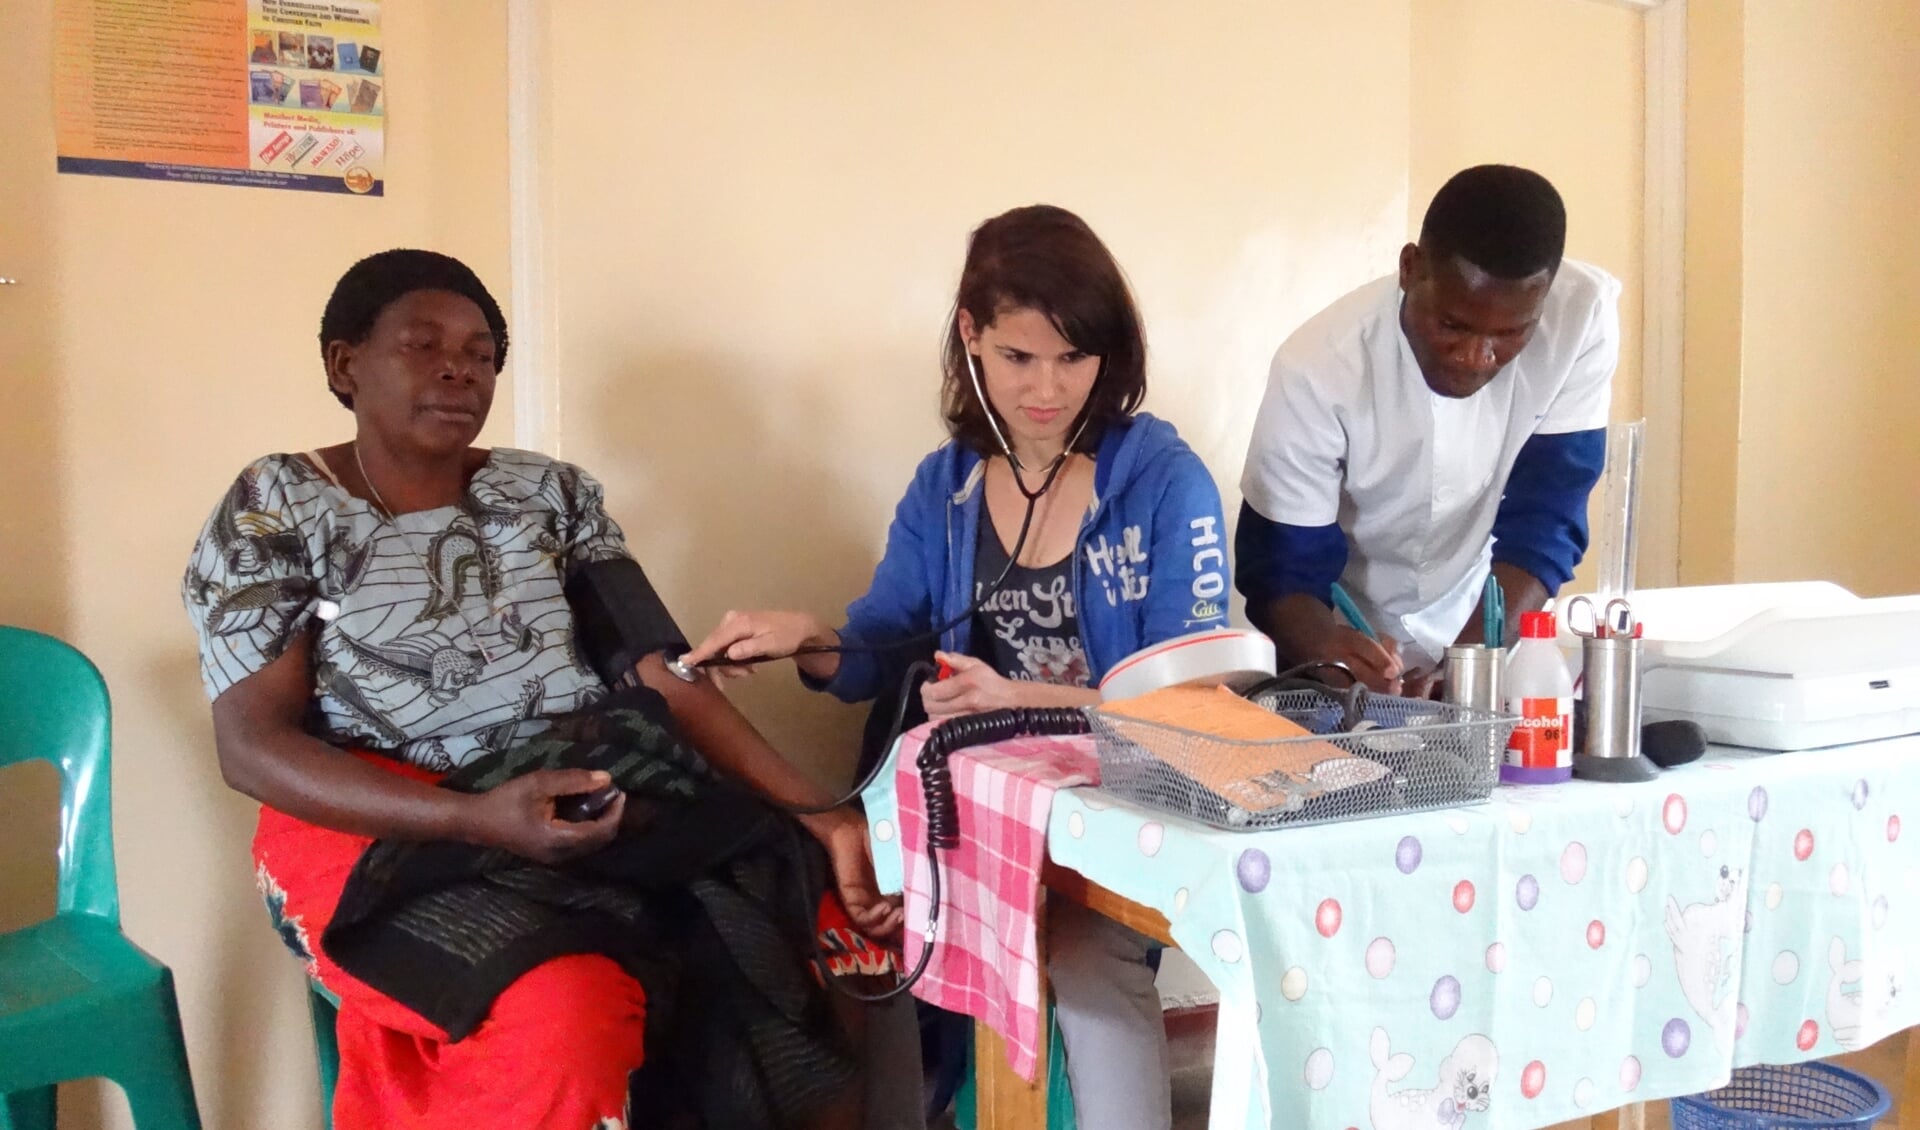 Het doel is om de gezondheidszorg in het Afrikaanse land Malawi op een hoger plan te brengen.